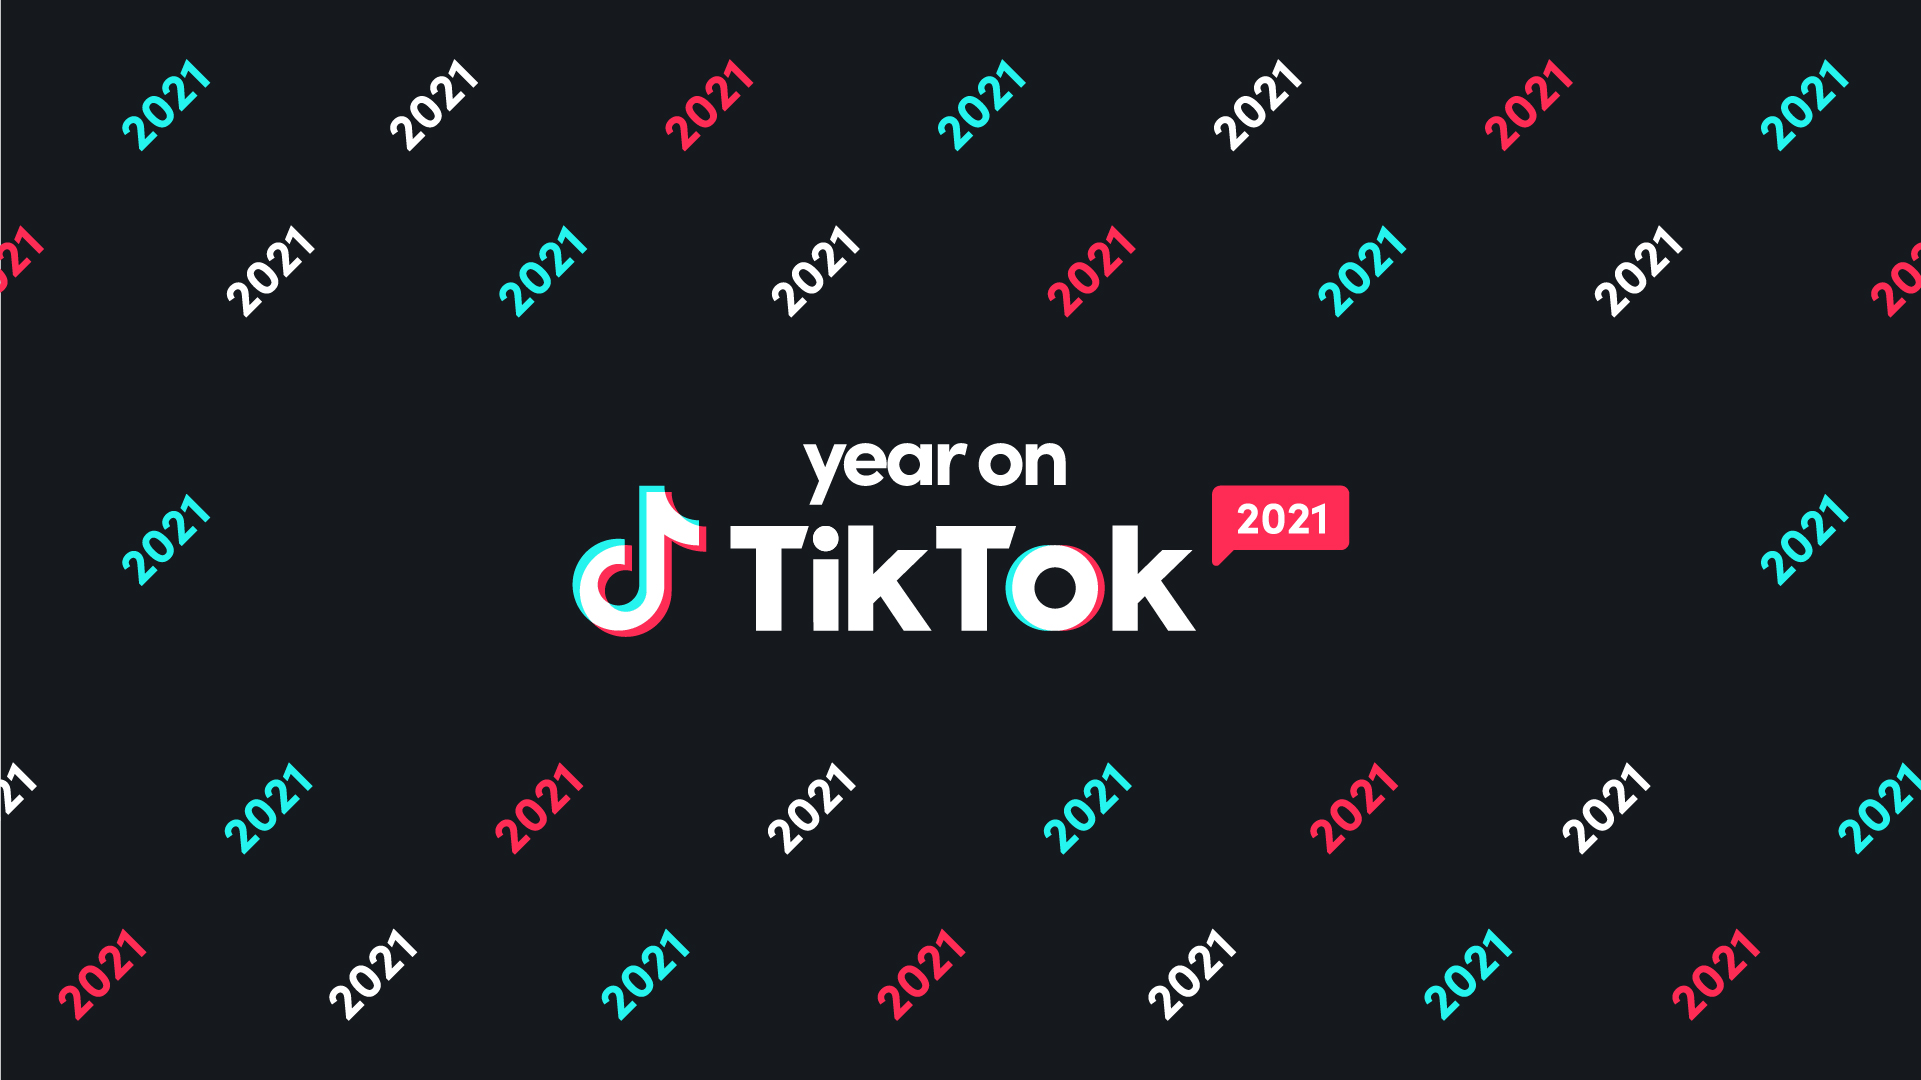 Bảng Tổng kết Year on TikTok sẽ giúp bạn review lại những khoảng khắc tuyệt vời nhất của năm qua trên TikTok. Cùng tìm hiểu những xu hướng, trào lưu hot nhất và những video đang được yêu thích nhất trên TikTok hiện nay. Hãy xem ảnh liên quan để khám phá thế giới tuyệt vời của Year on TikTok.